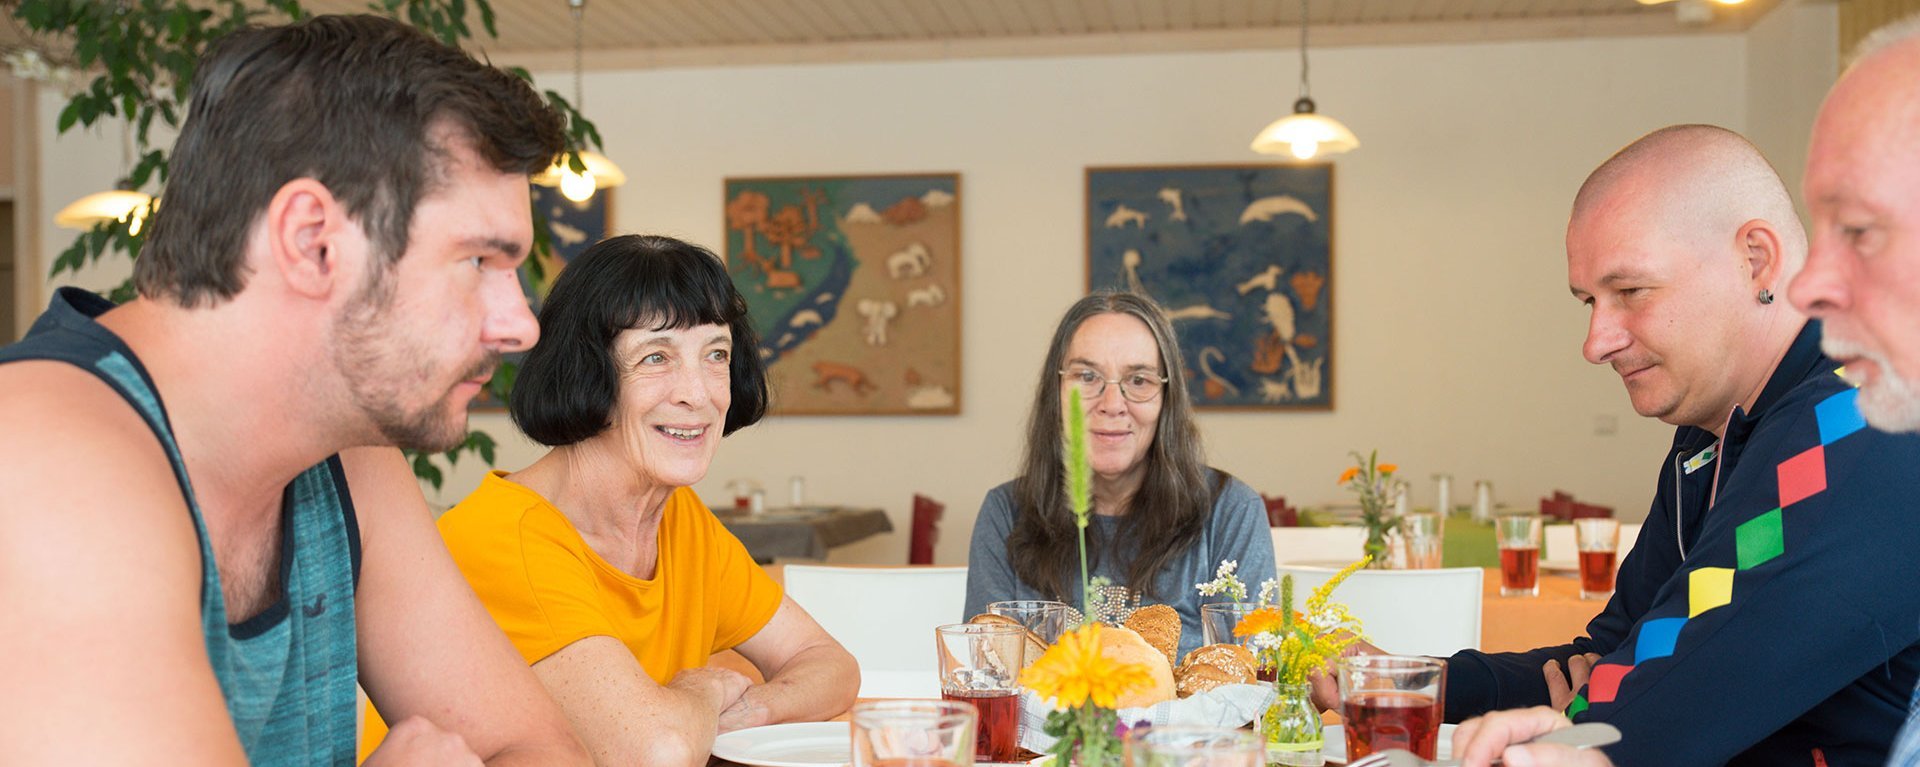 zwei ältere Frauen lächeln am reichlich gedeckten Frühstückstisch in die Kamera